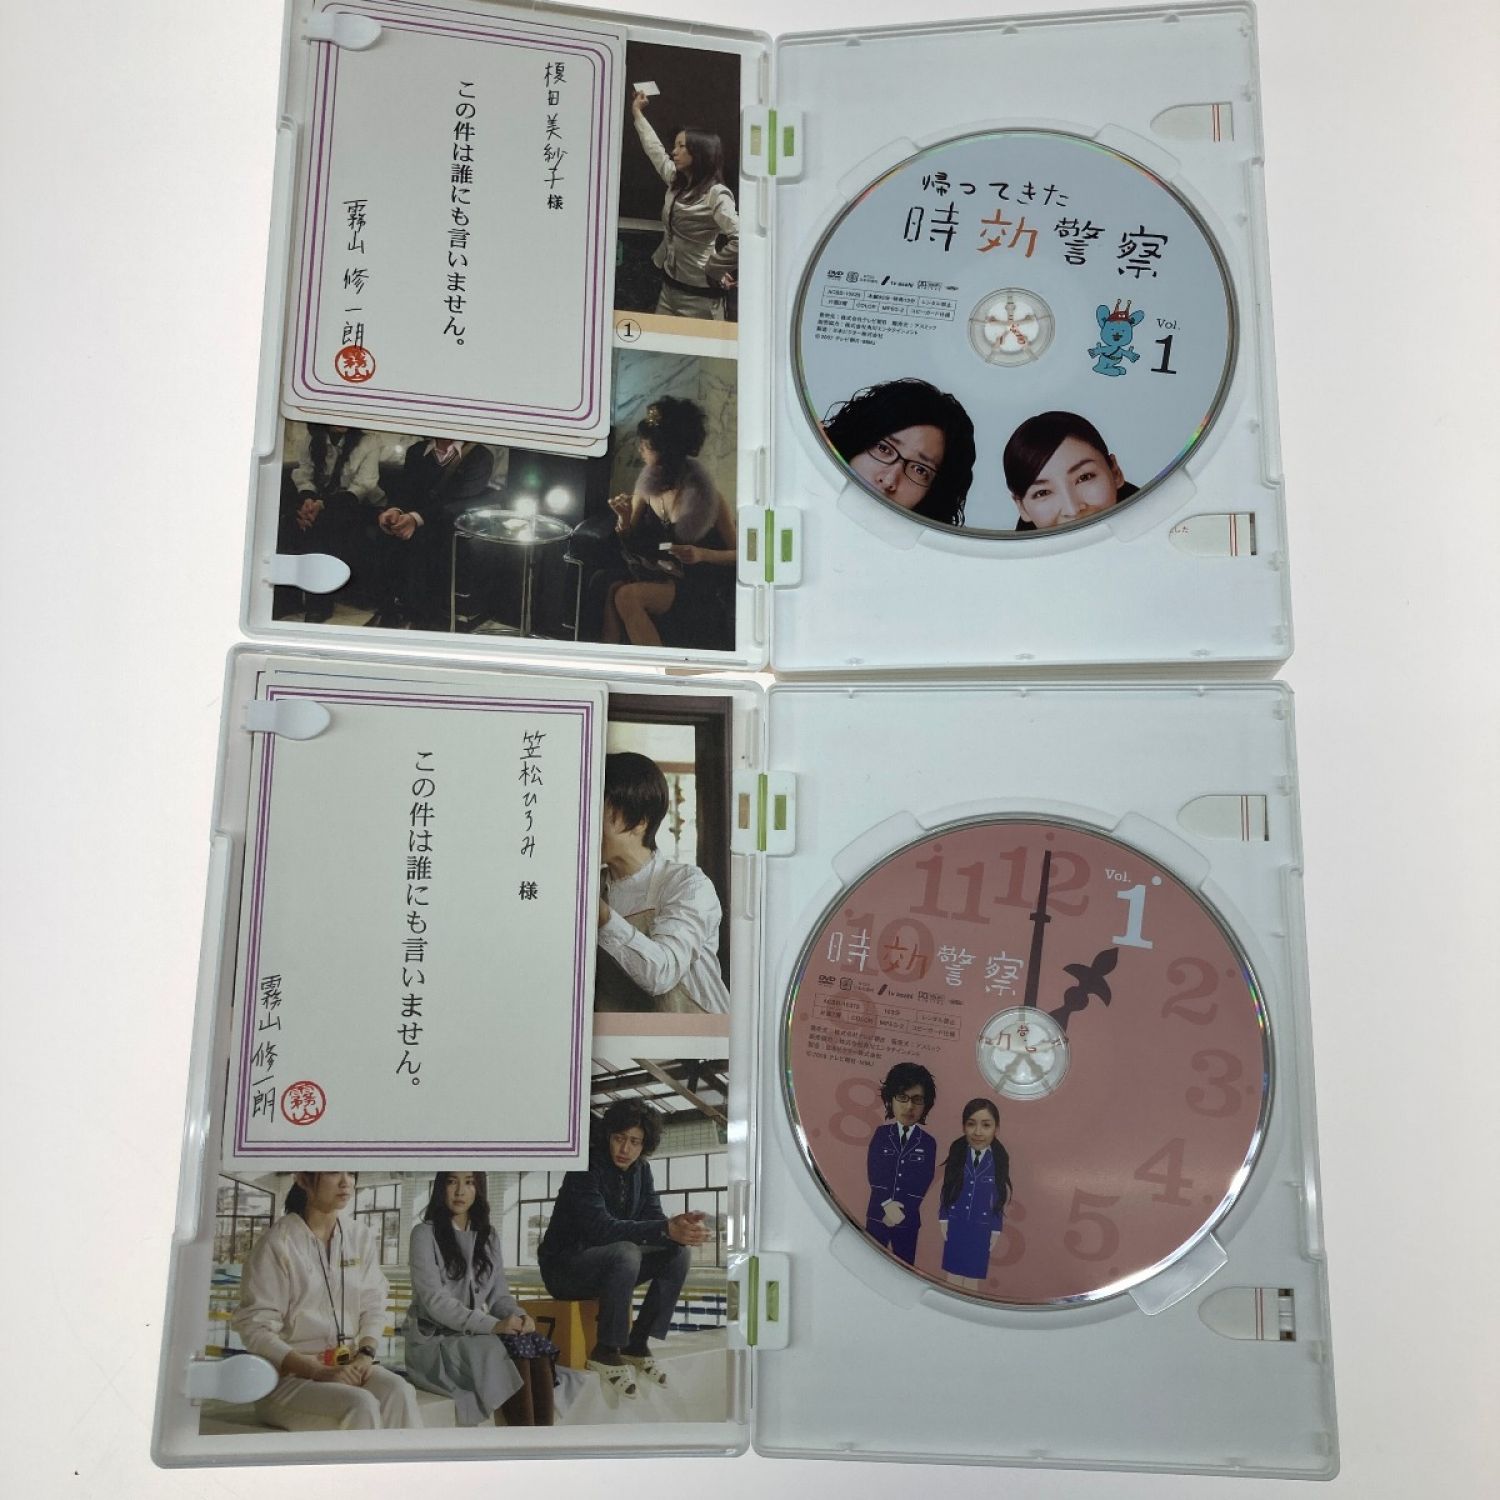 帰ってきた時効警察 DVD-BOX〈5枚組〉 - 日本映画